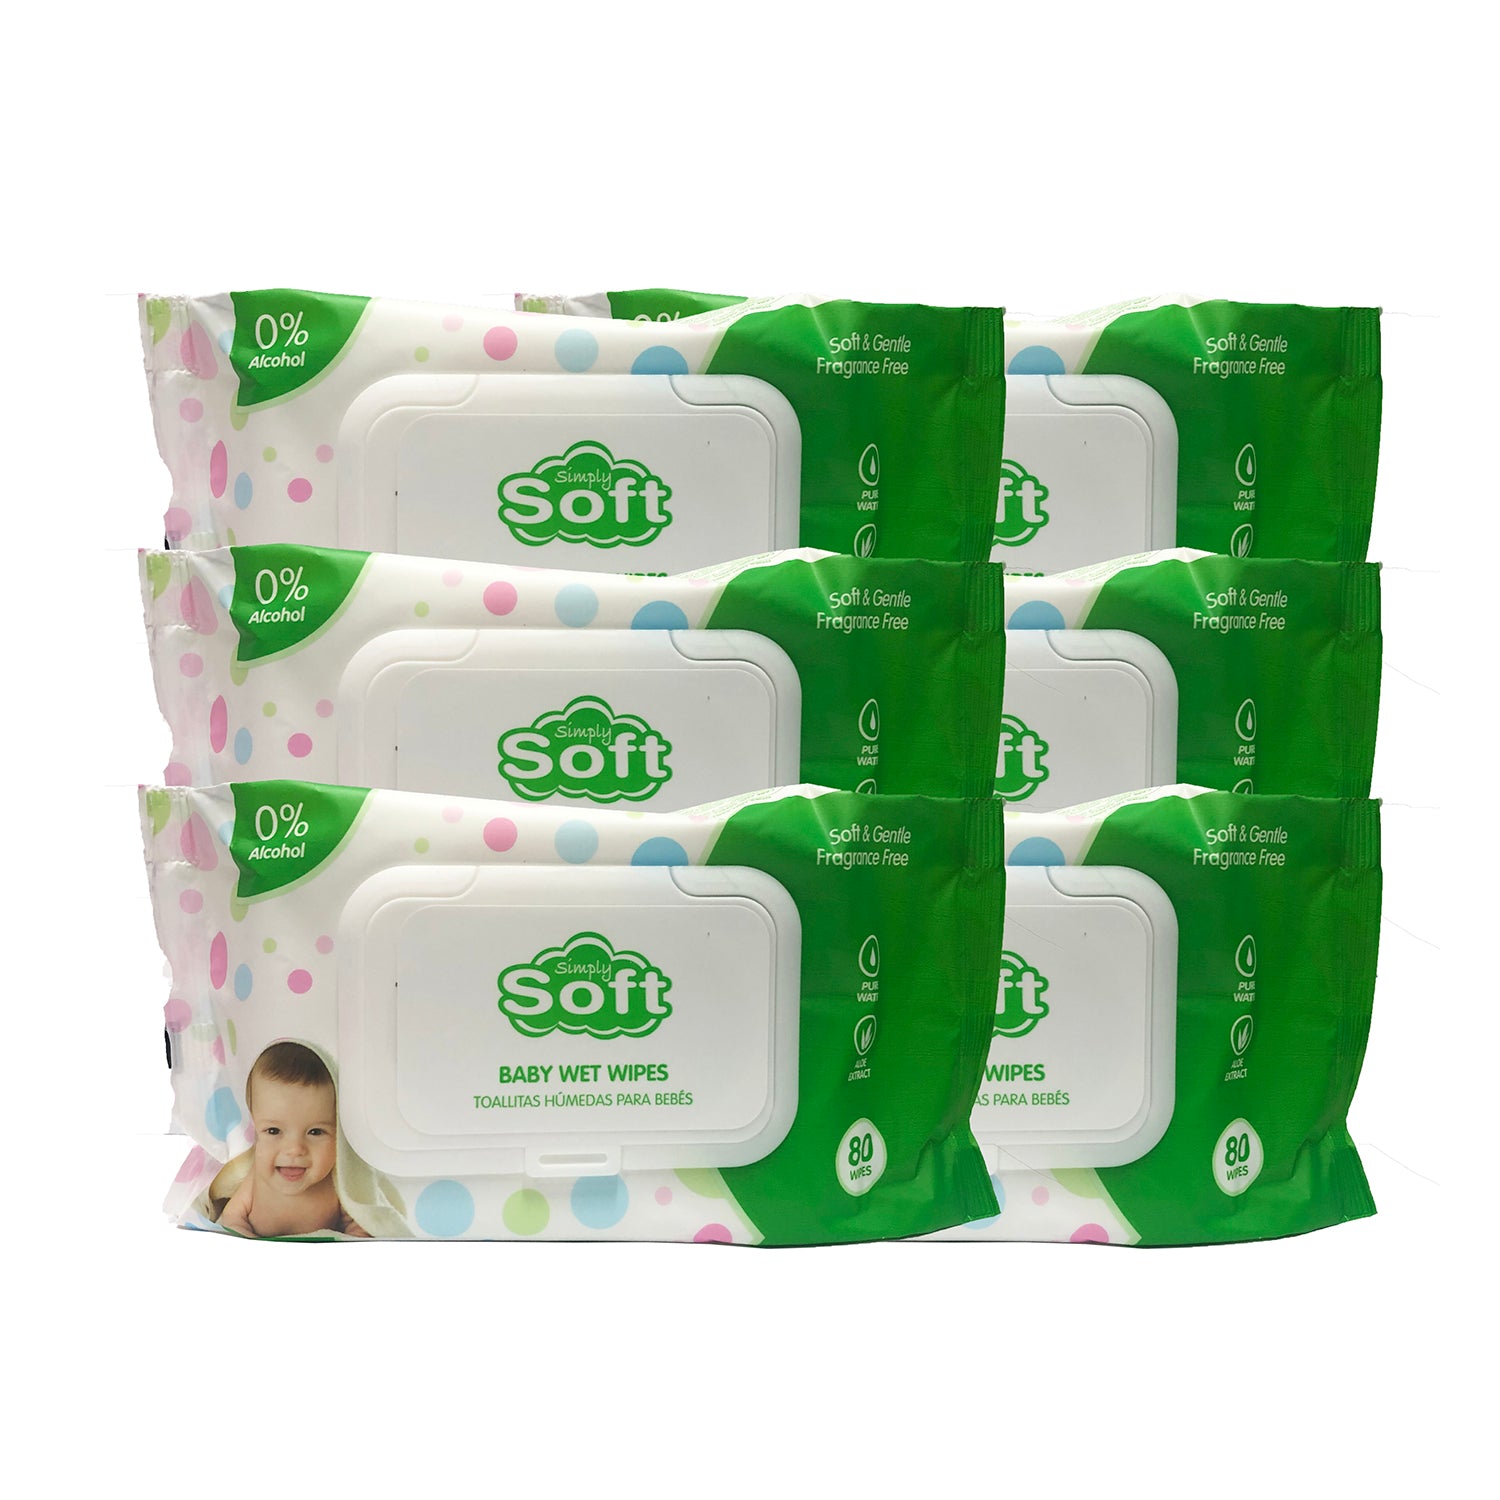 Toallitas Húmedas para Bebé Baby Soft Essentials 80 Toallitas